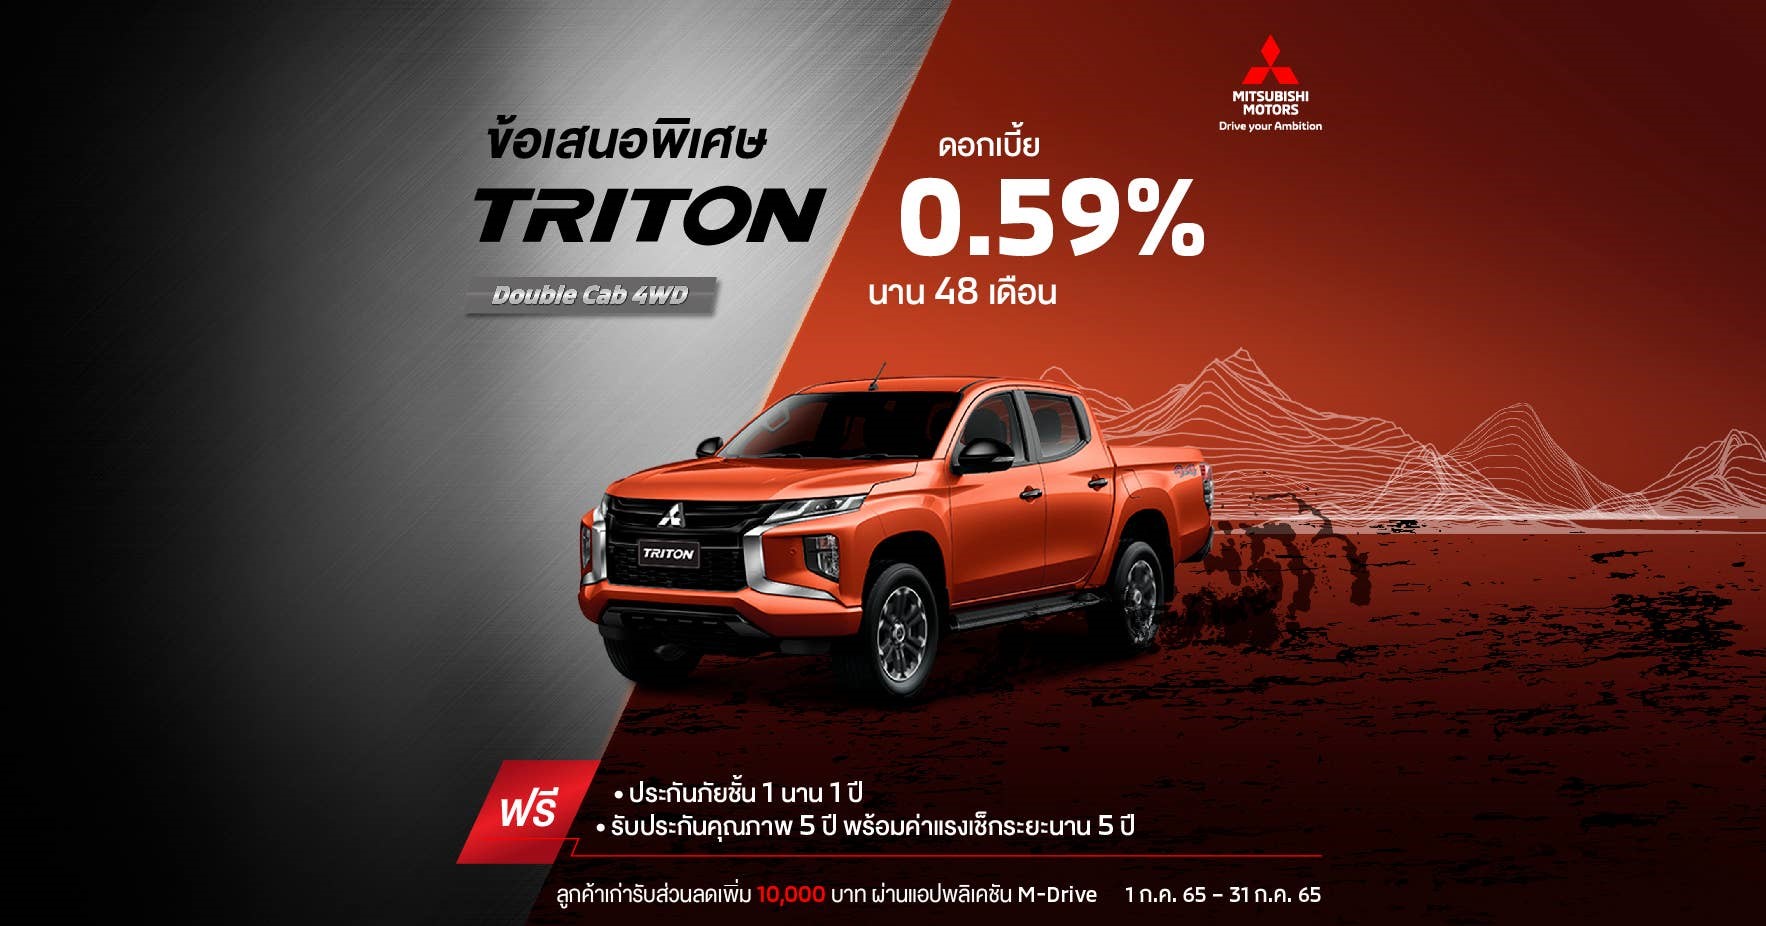 Triton สำหรับรุ่น ดับเบิ้ล แค็บ (4WD) รับ ดอกเบี้ย 0.59%* นาน 48 เดือน